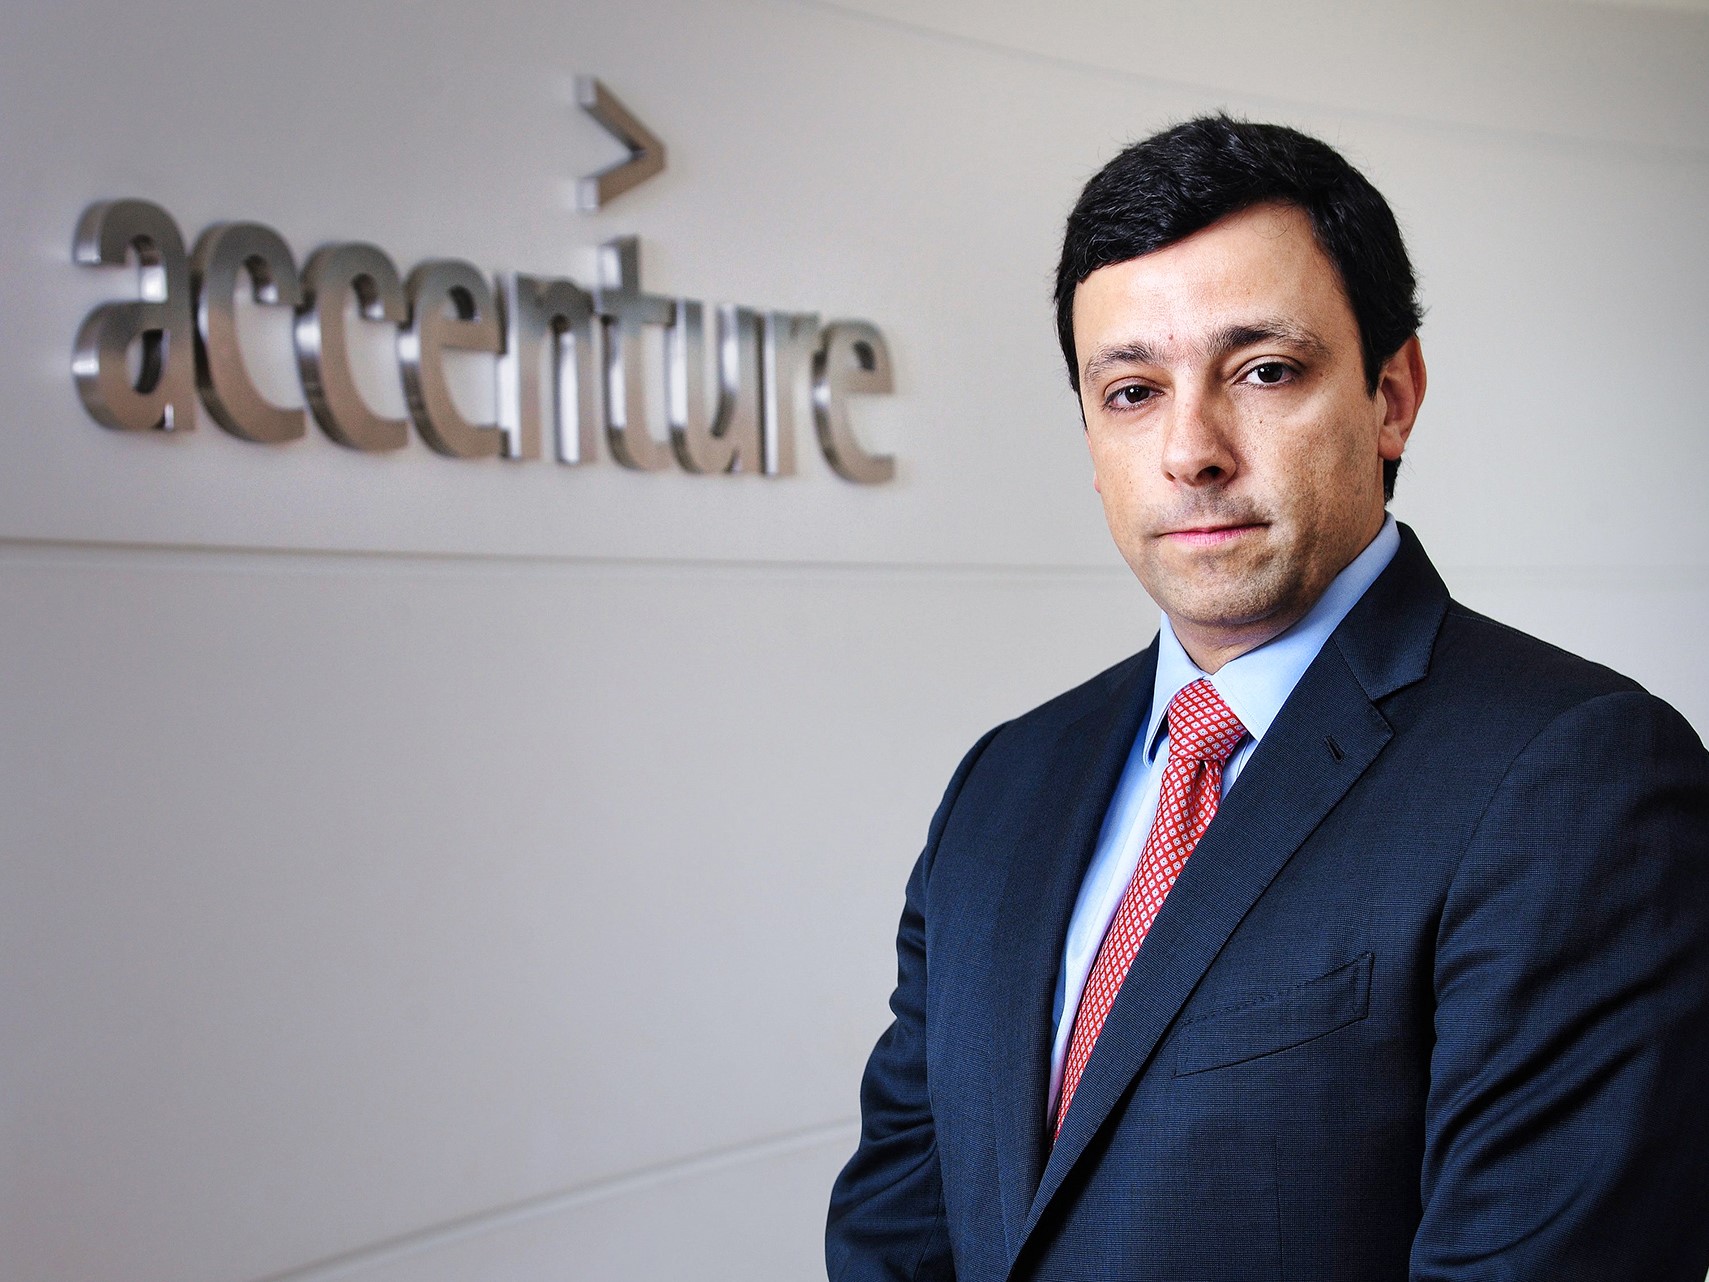 “Esta aquisição aumenta nossa liderança na América Latina e fortalece a Accenture como líder global do ecossistema de ServiceNow.”, declarou Leonardo Framil, presidente da Accenture para o Brasil e América Latina.